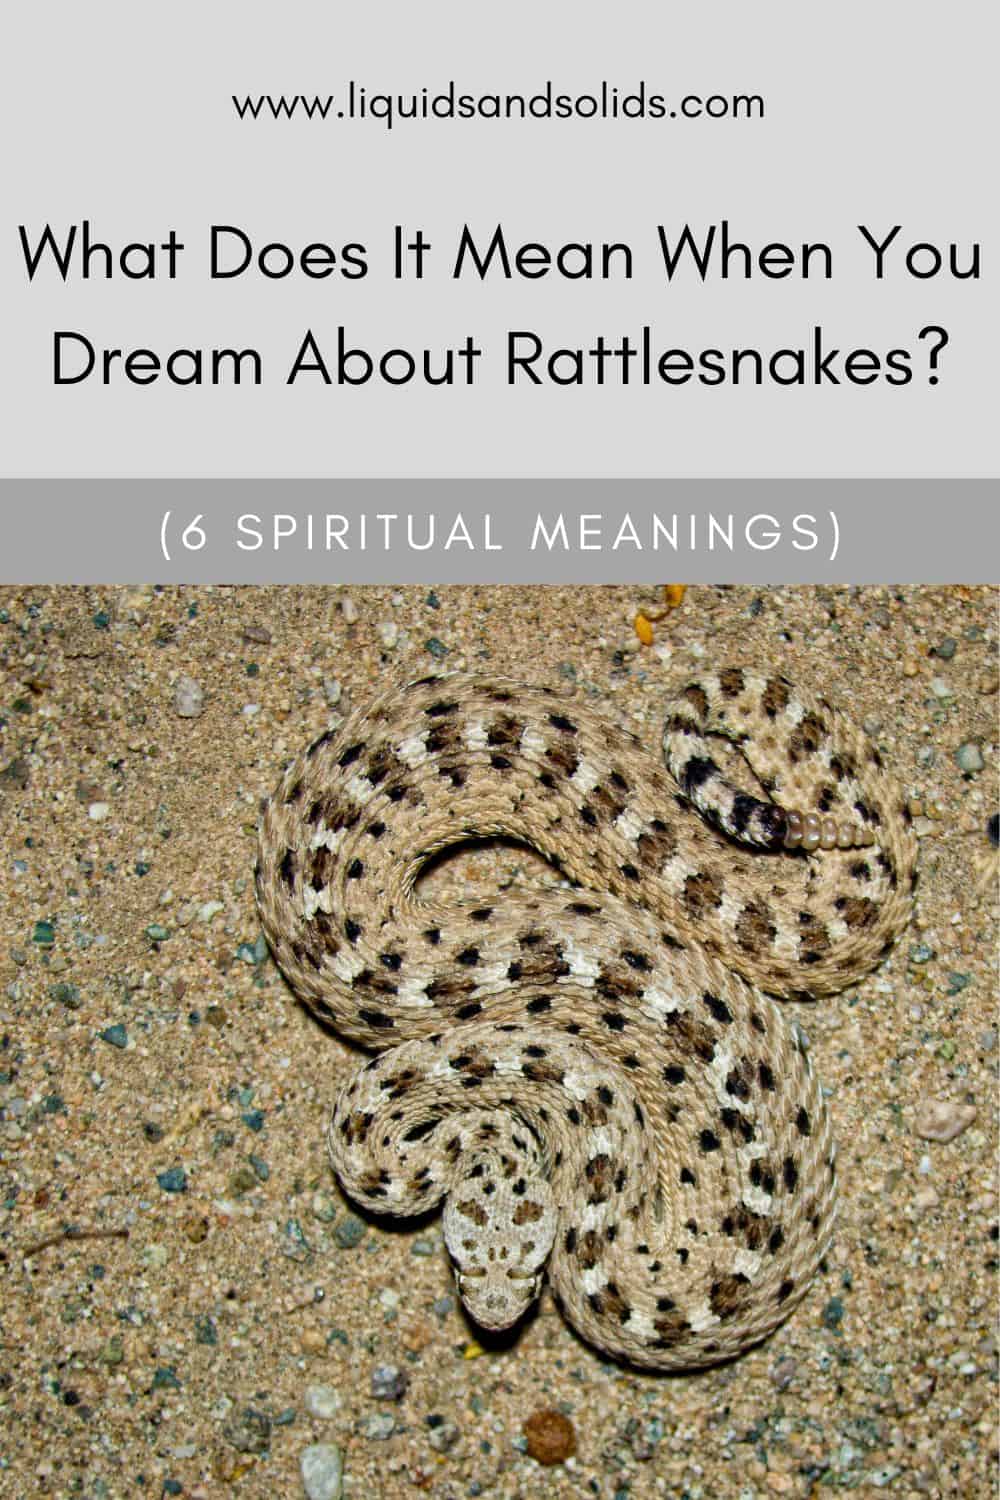  ມັນຫມາຍຄວາມວ່າແນວໃດໃນເວລາທີ່ທ່ານຝັນກ່ຽວກັບ Rattlesnakes? (6 ຄວາມ​ຫມາຍ​ທາງ​ວິນ​ຍານ​)